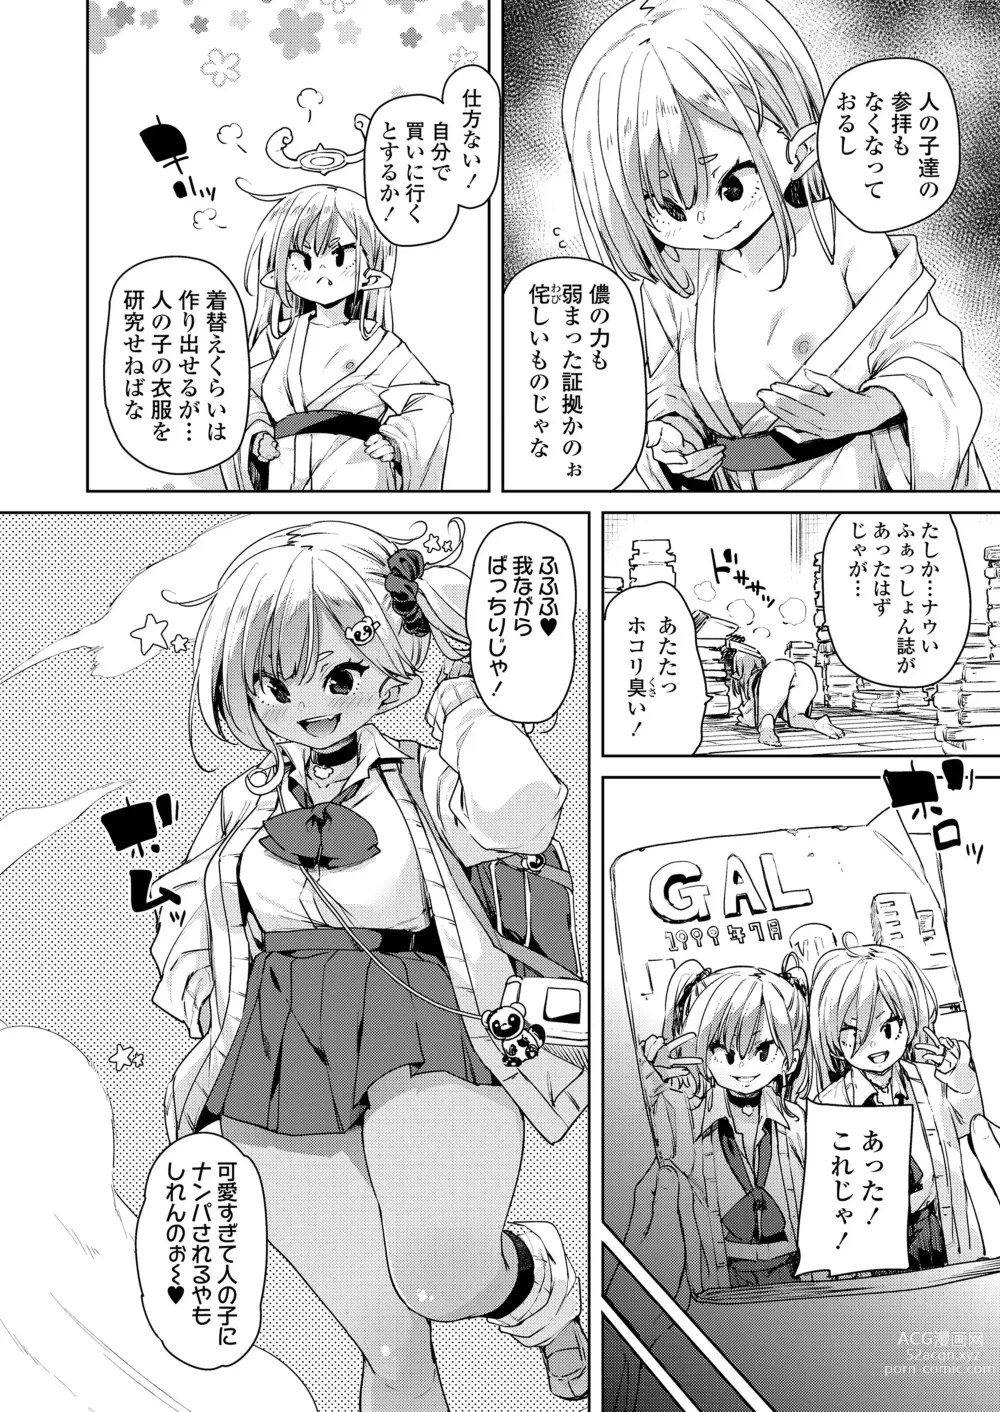 Page 28 of manga Towako Oboro Emaki 13